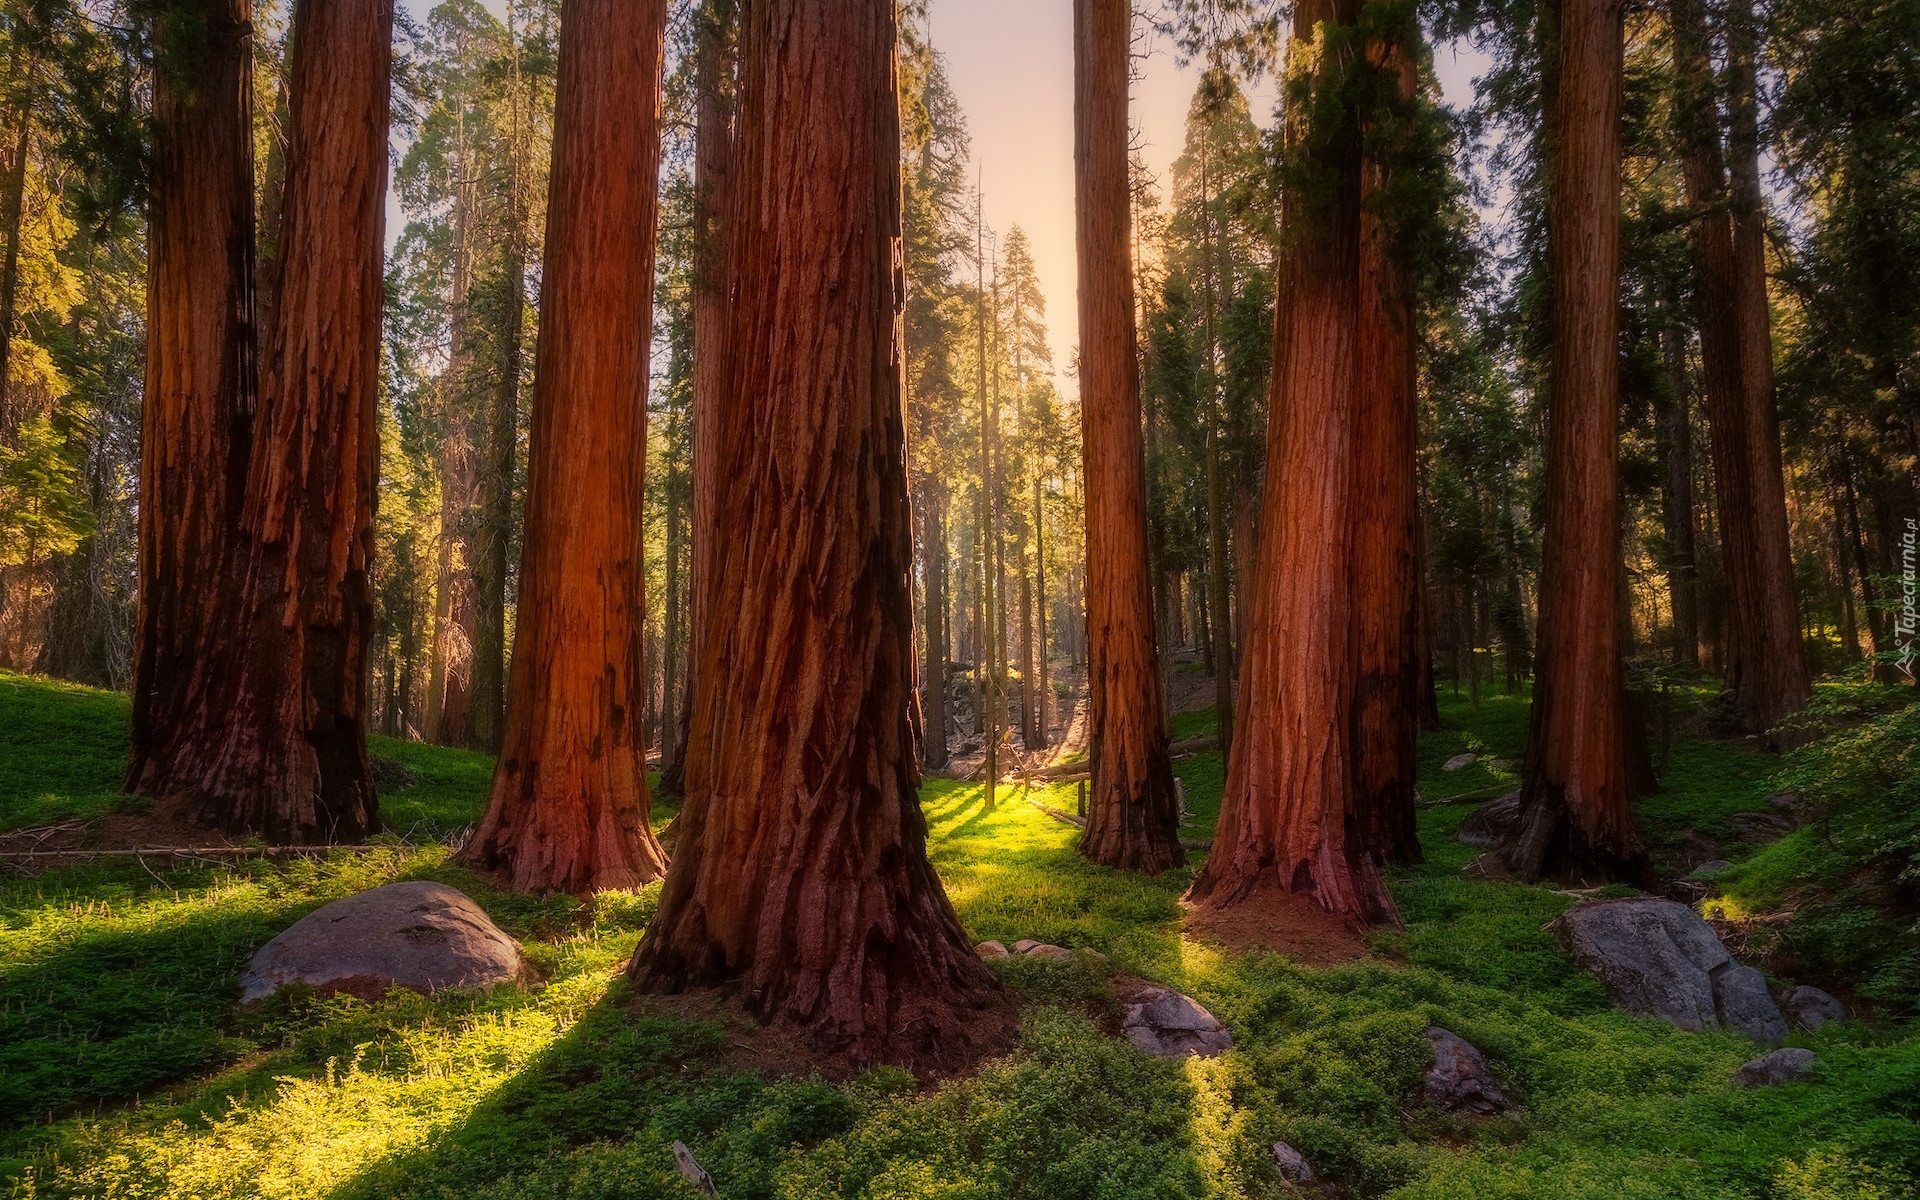 Las, Drzewa, Sekwoje, Park Narodowy Sekwoi, Kalifornia, Stany Zjednoczone